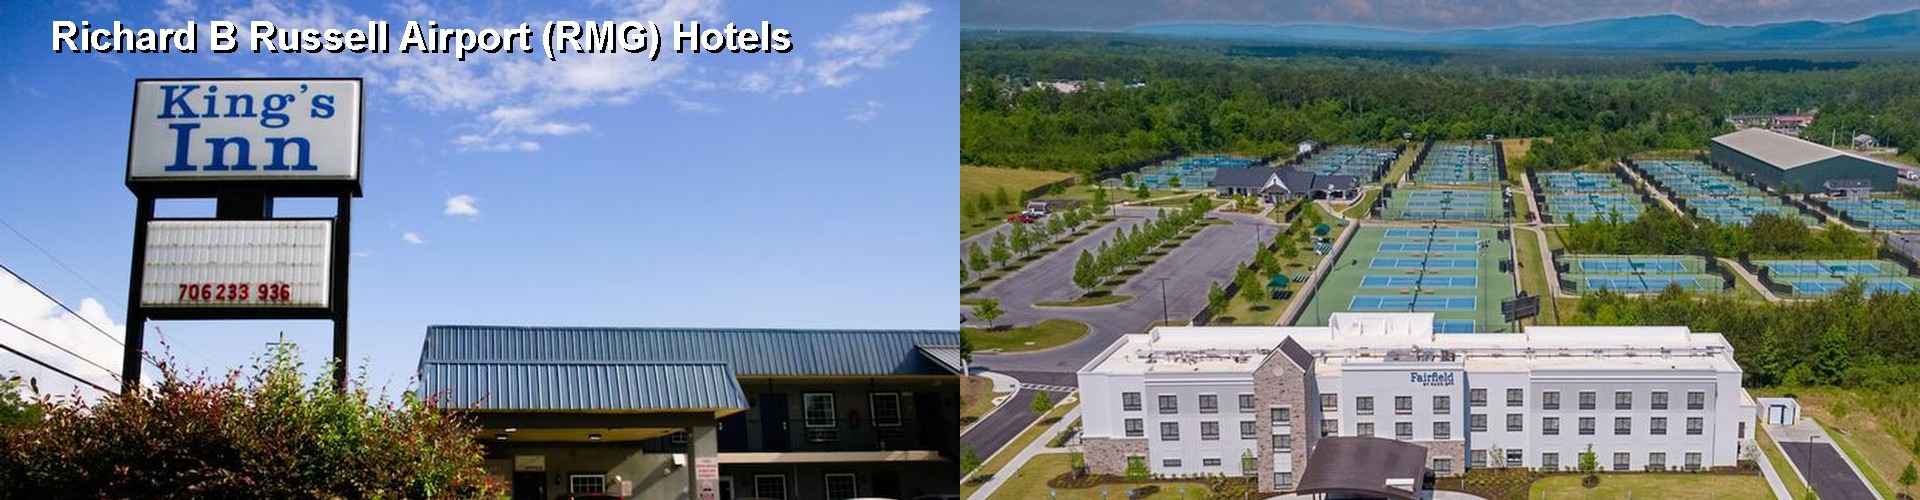 5 Best Hotels near Richard B Russell Airport (RMG)